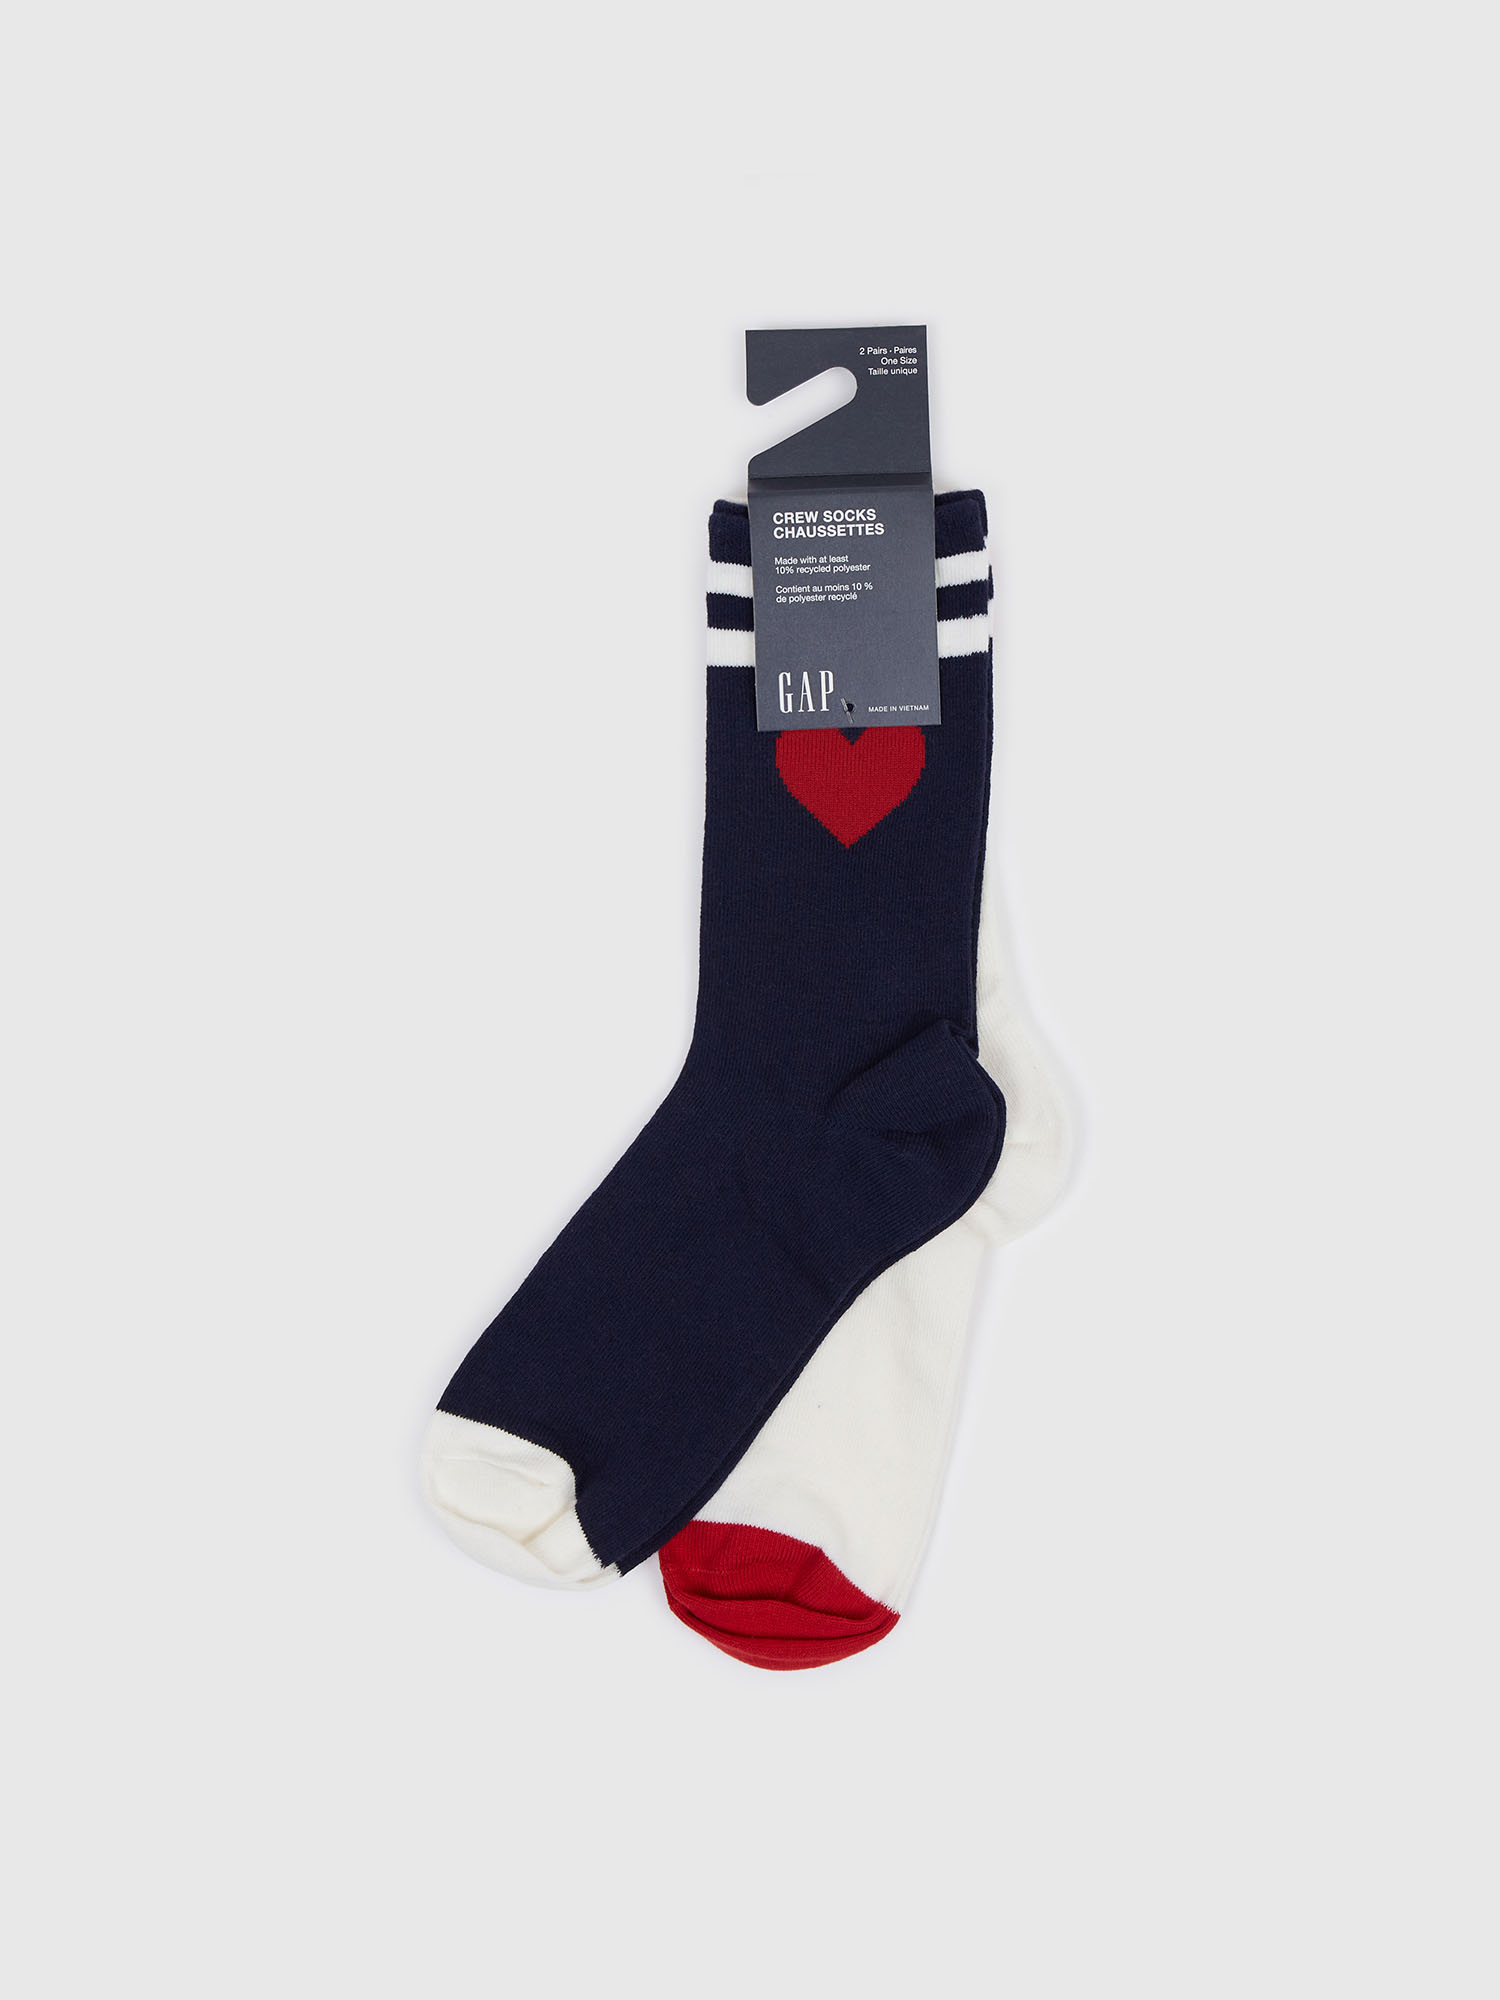 GAP Women's patterned socks, 2 pairs - Women